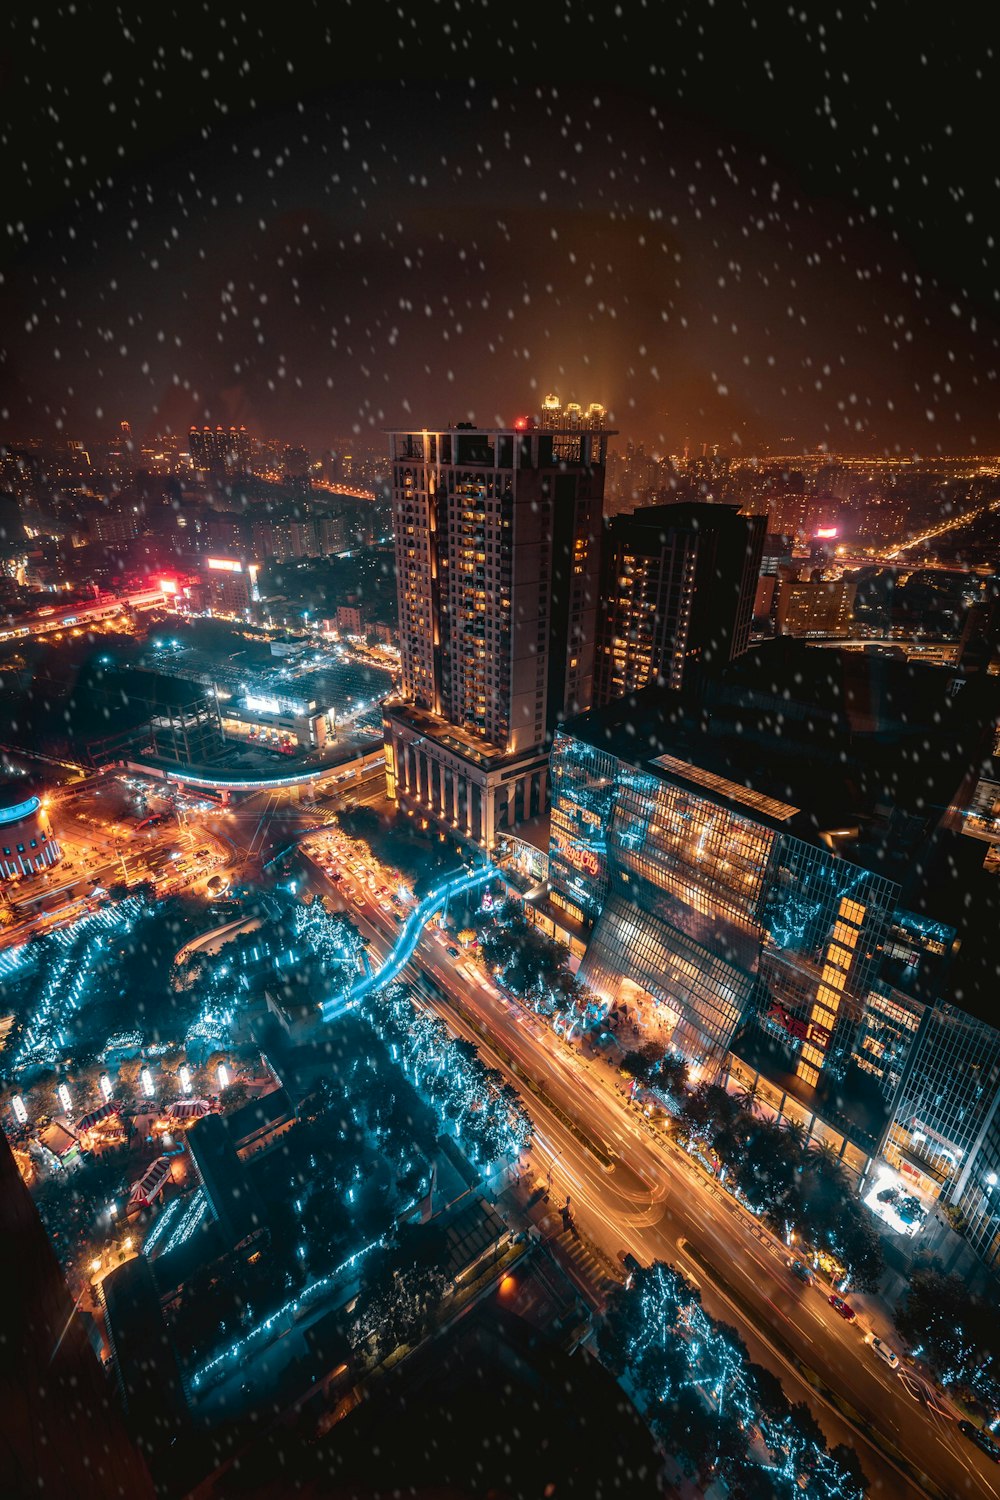 Fotografia com vista aérea de edifícios da cidade durante a noite